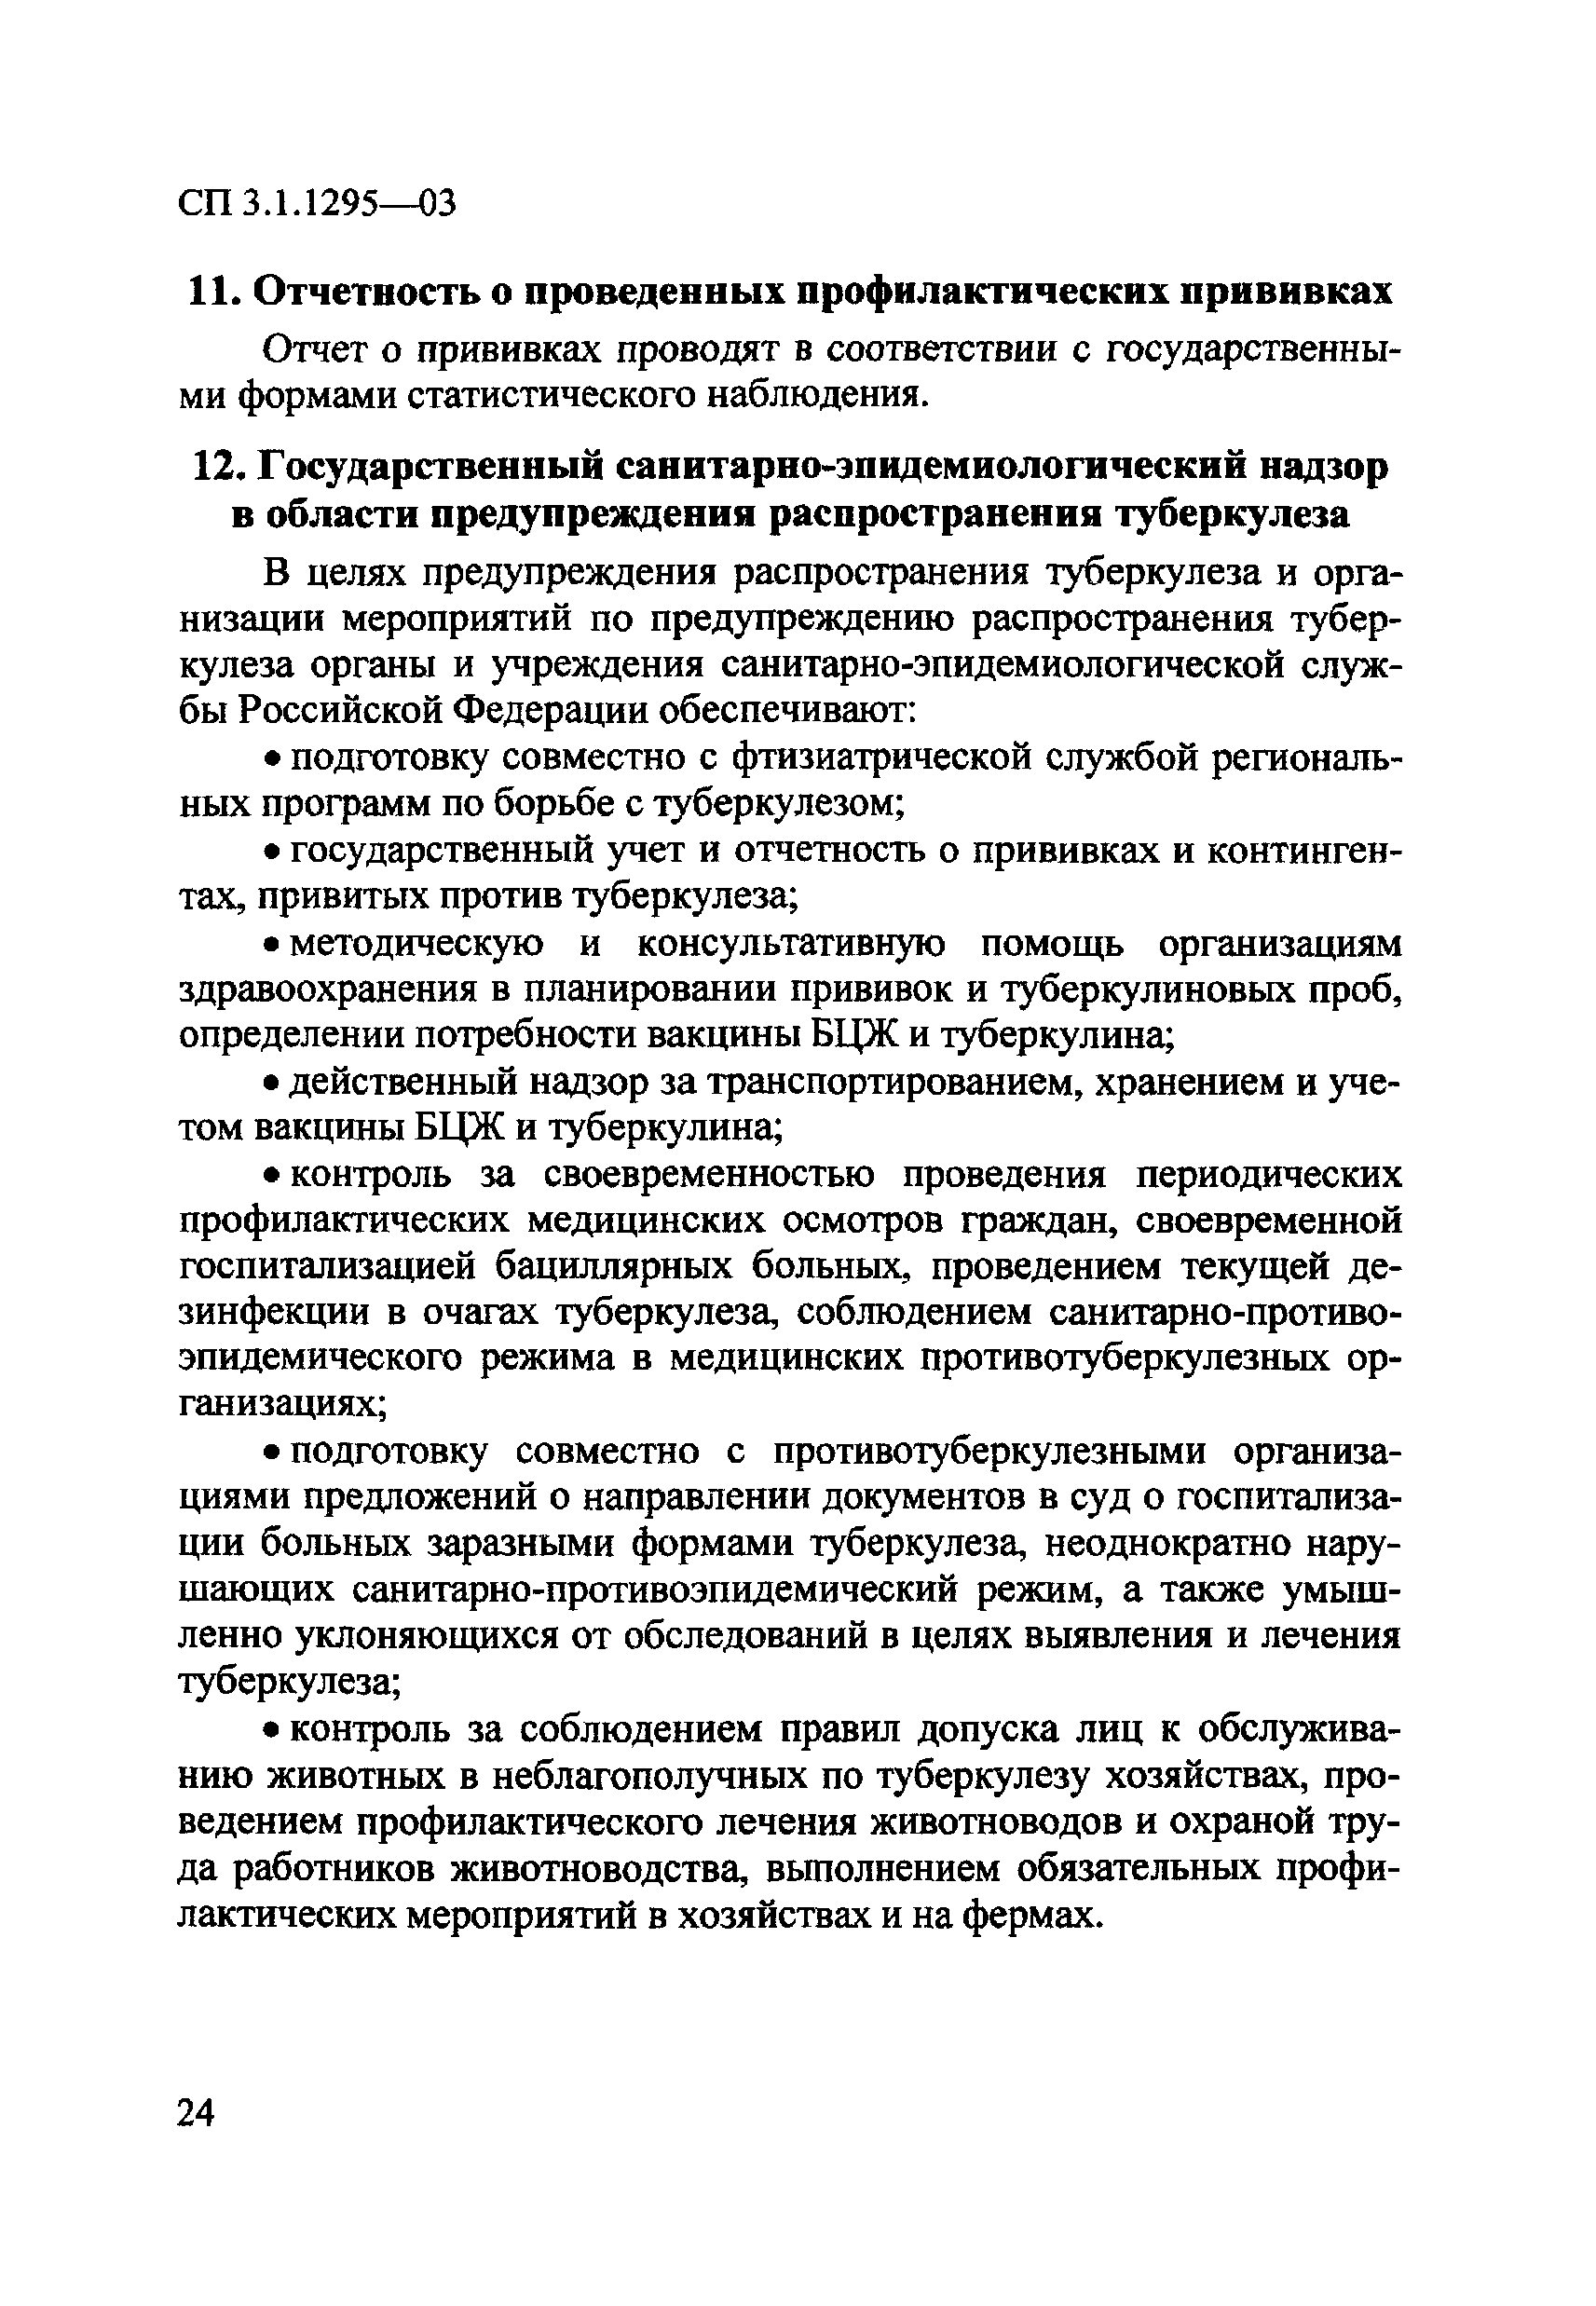 СП 3.1.1295-03